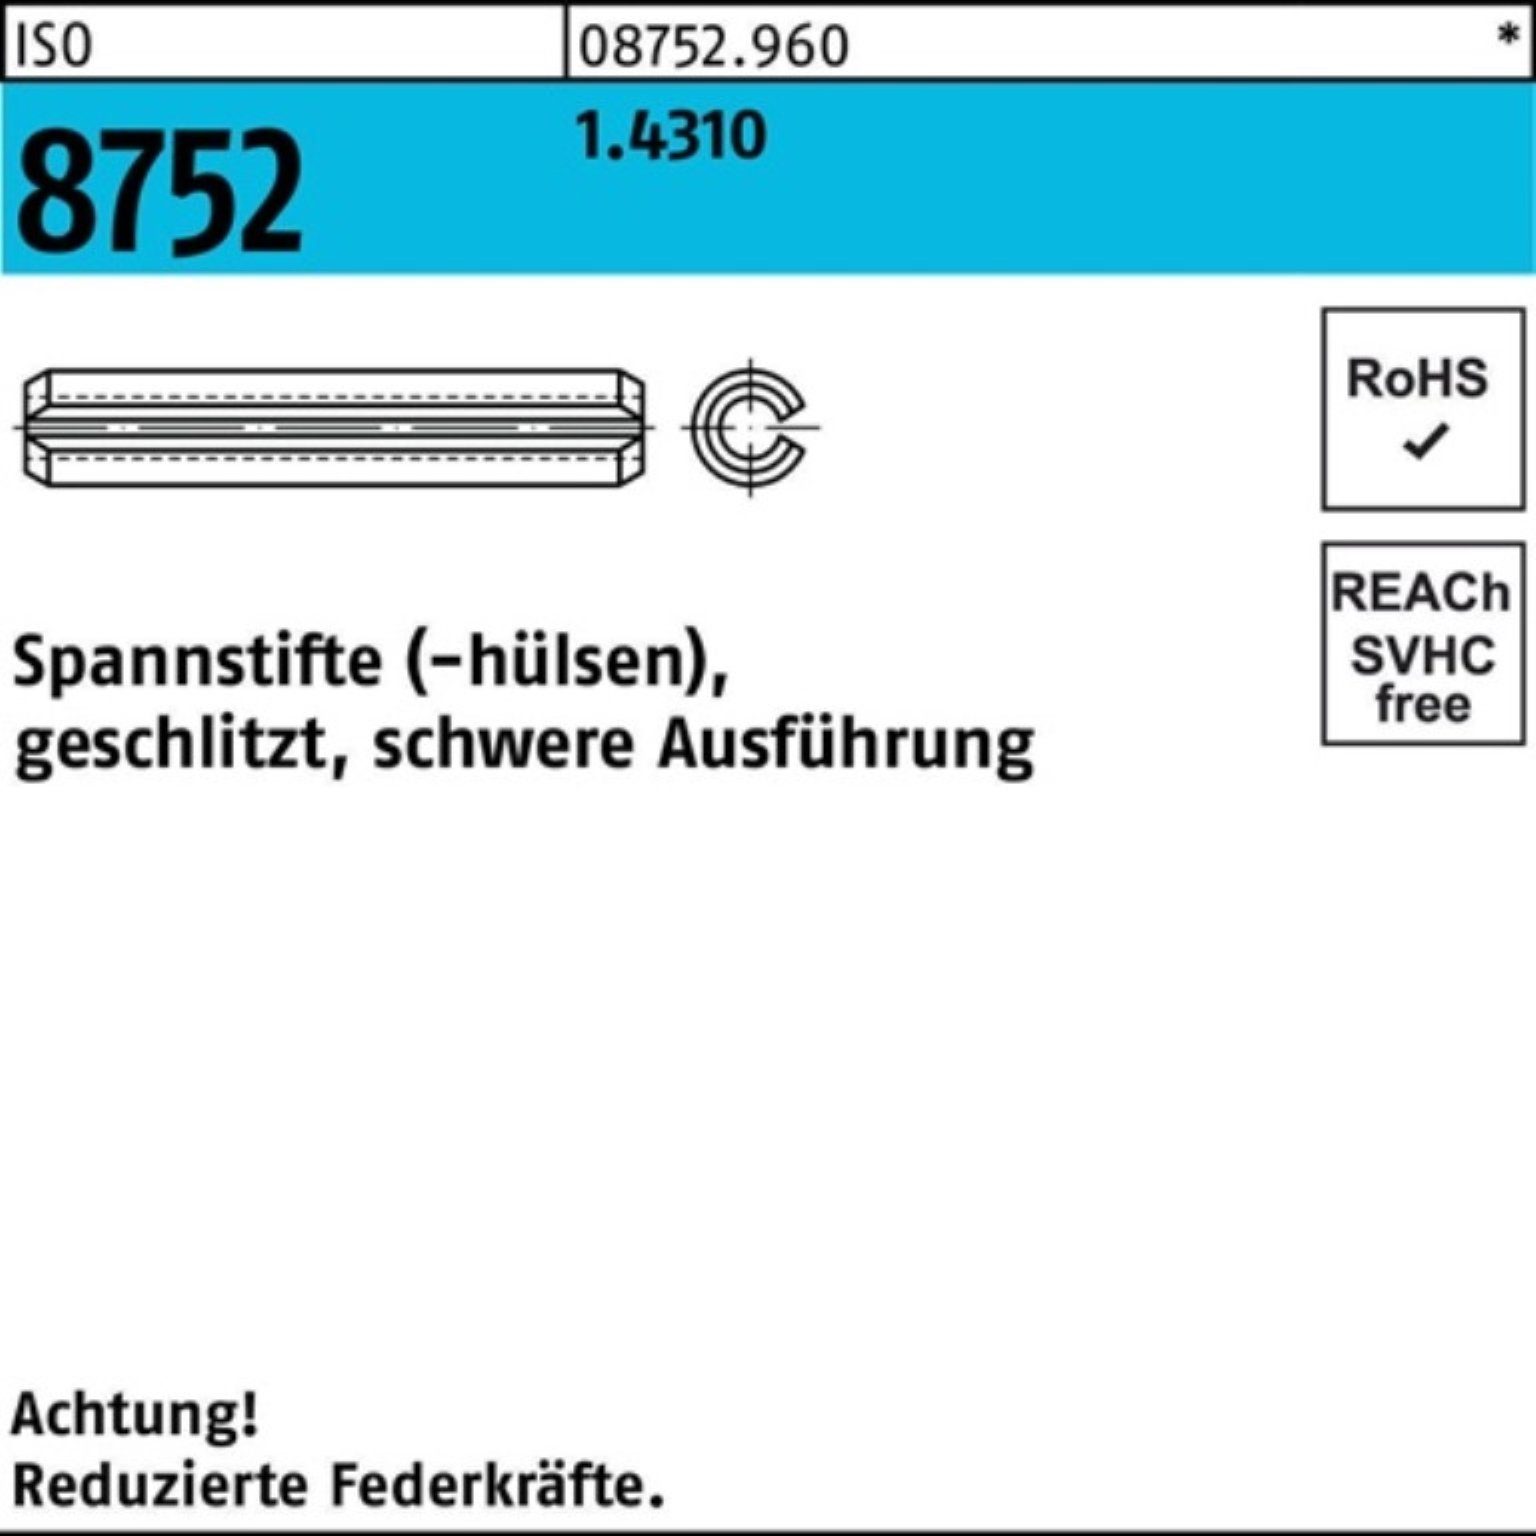 Reyher Spannstift 100er Pack Spannstift geschlitzt schwere 1x Ausf. 1 1.4310 ISO 8752 10